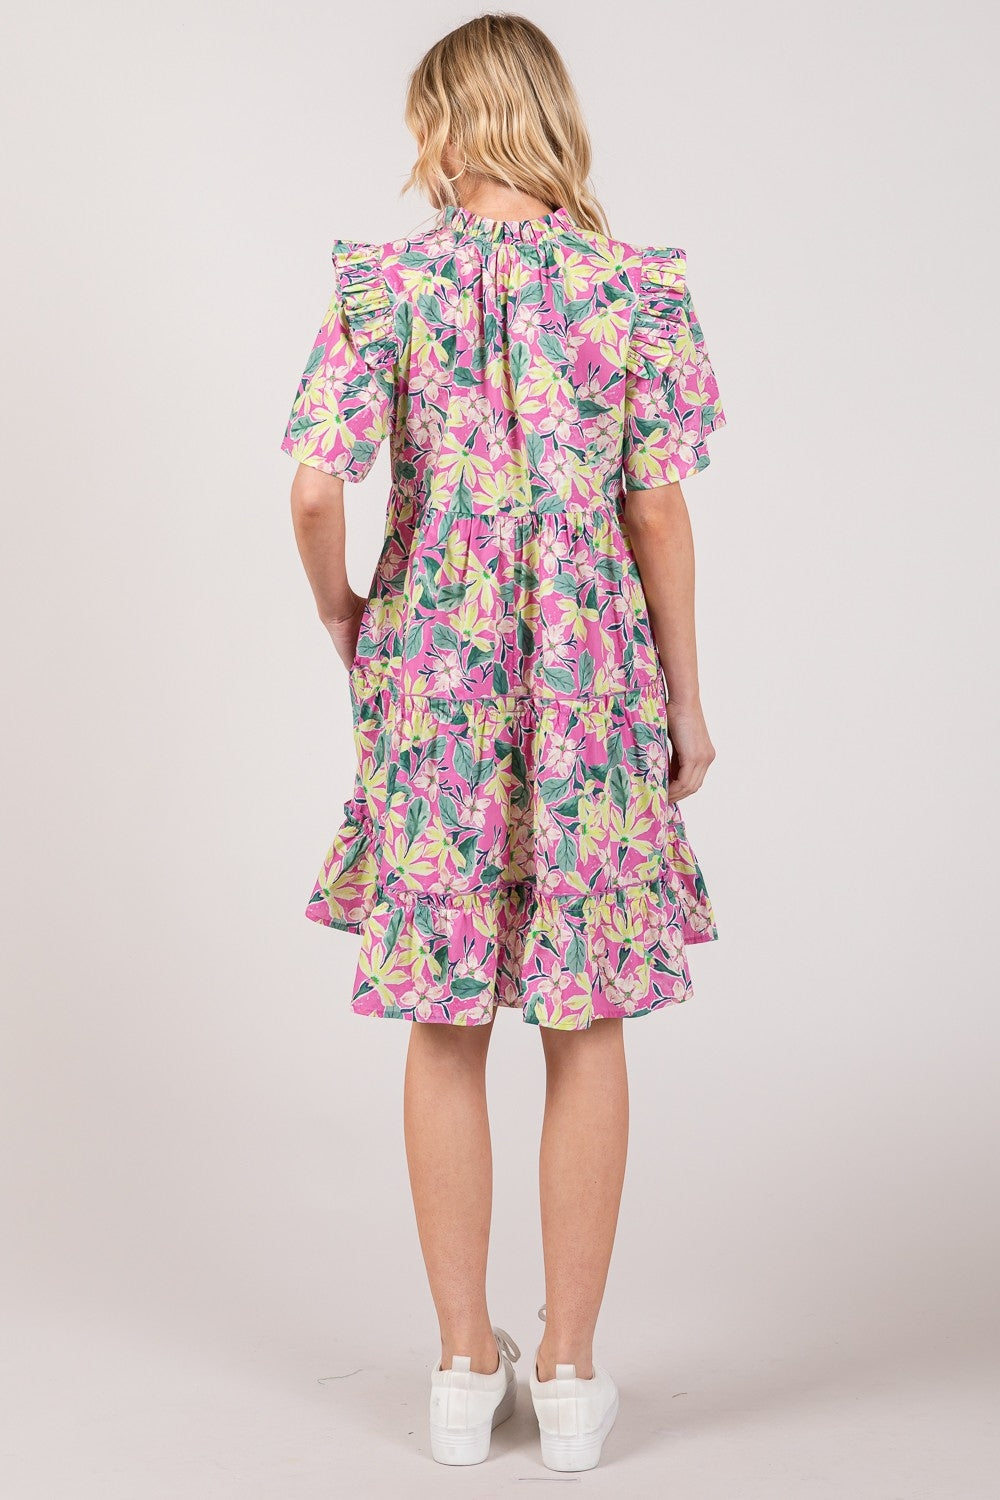 Amalia Floral Ruffle Short Sleeve Dress